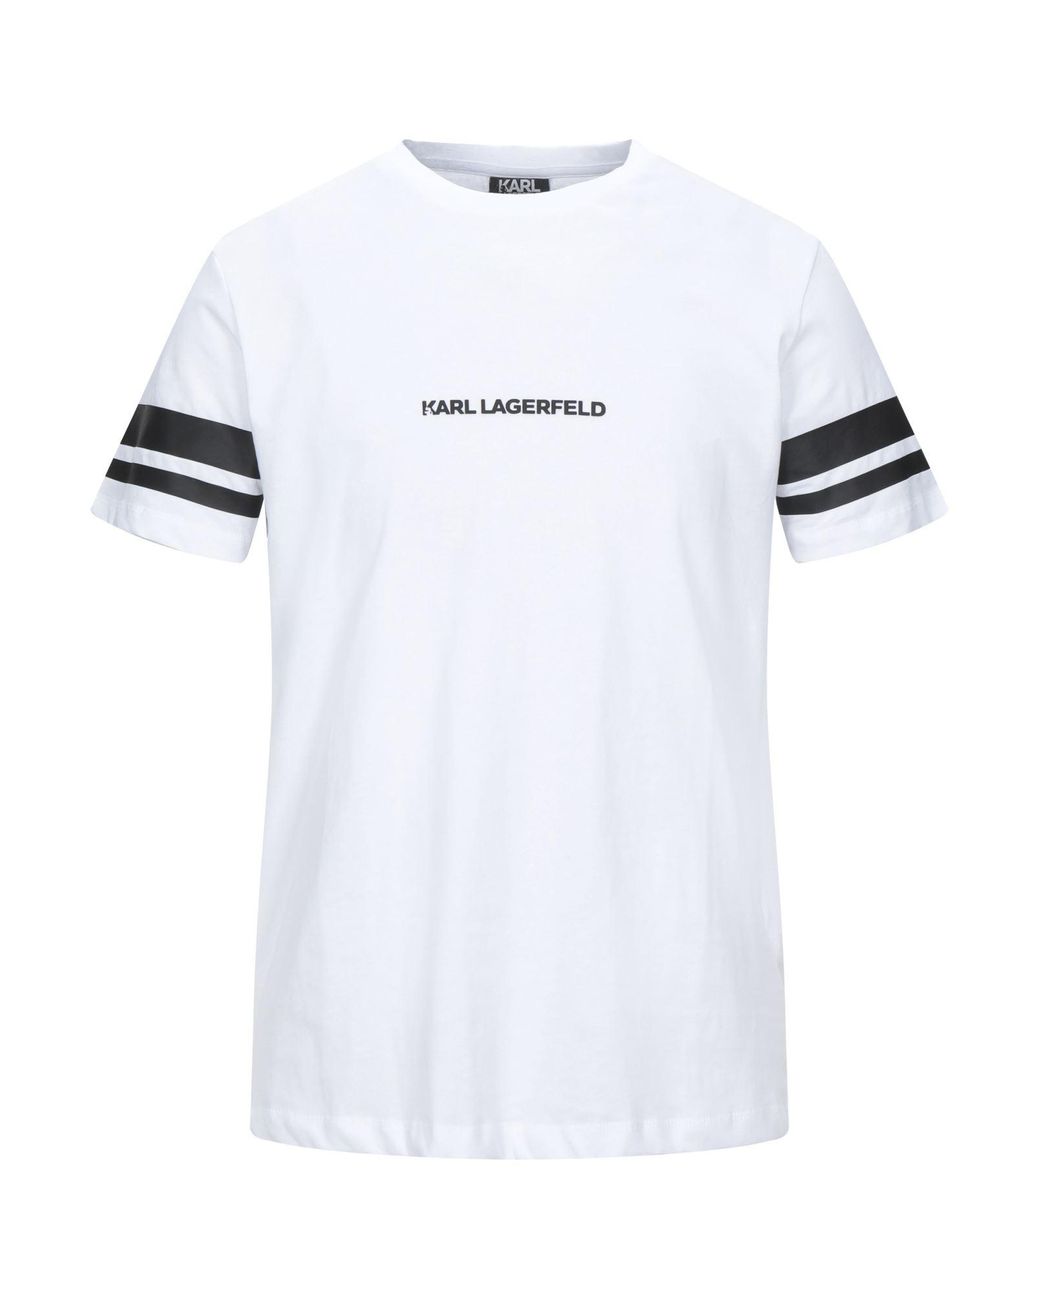 Karl Lagerfeld T-shirt in White for Men - Lyst